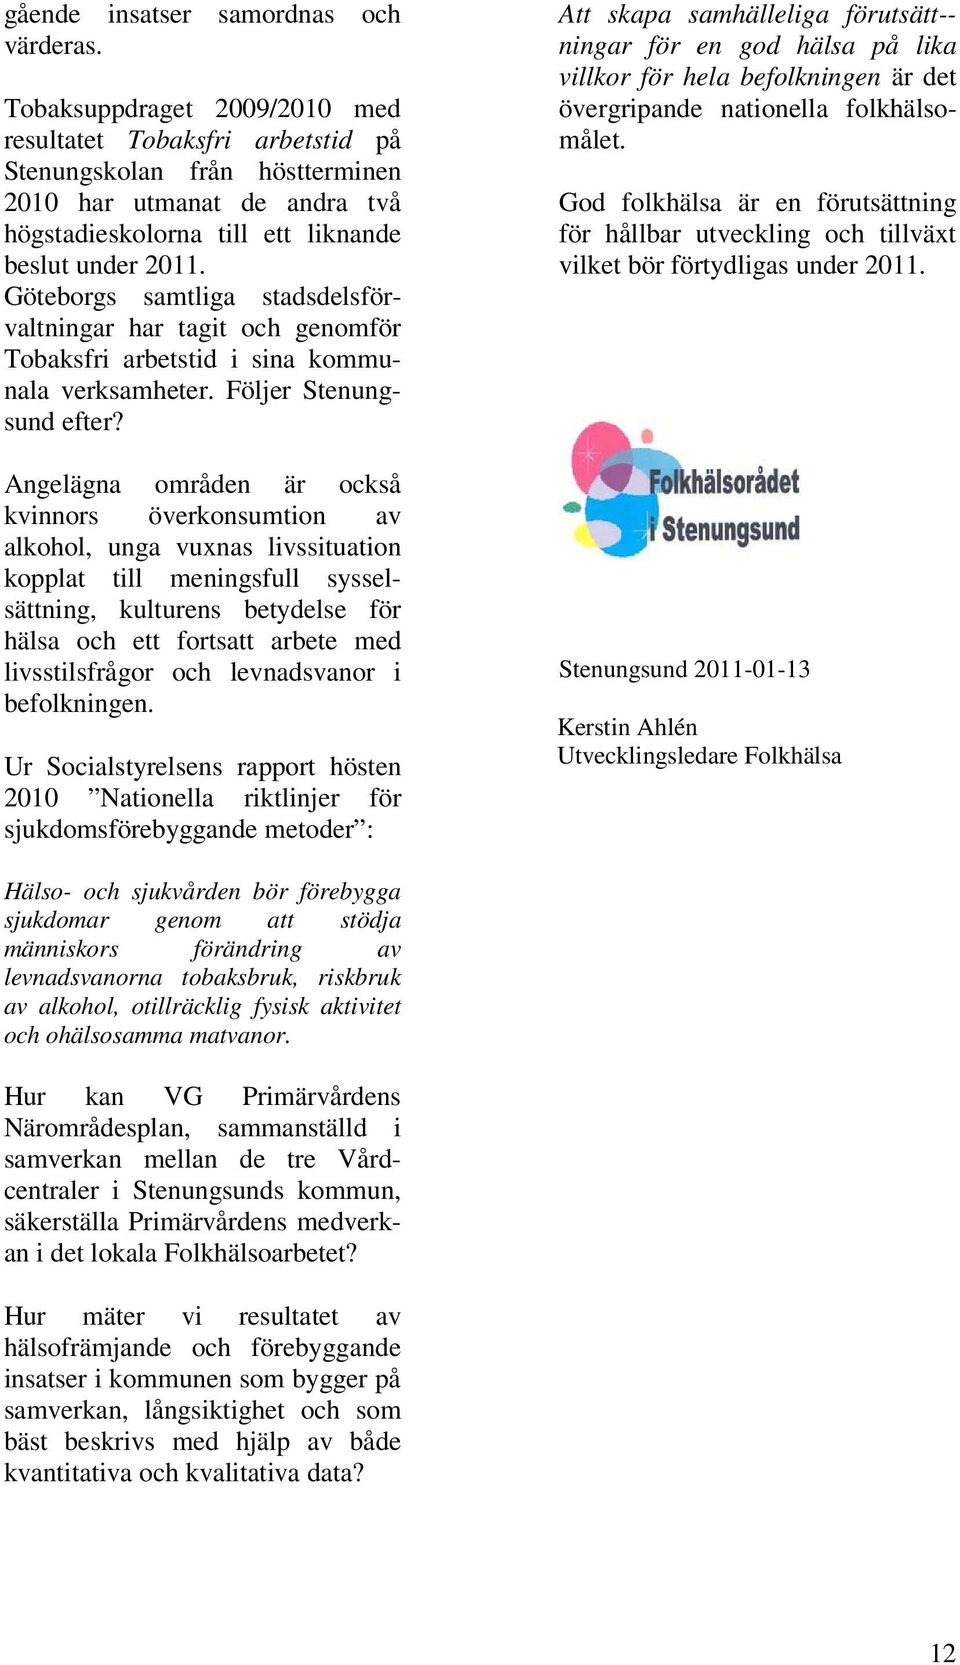 Göteborgs samtliga stadsdelsförvaltningar har tagit och genomför Tobaksfri arbetstid i sina kommunala verksamheter. Följer Stenungsund efter?